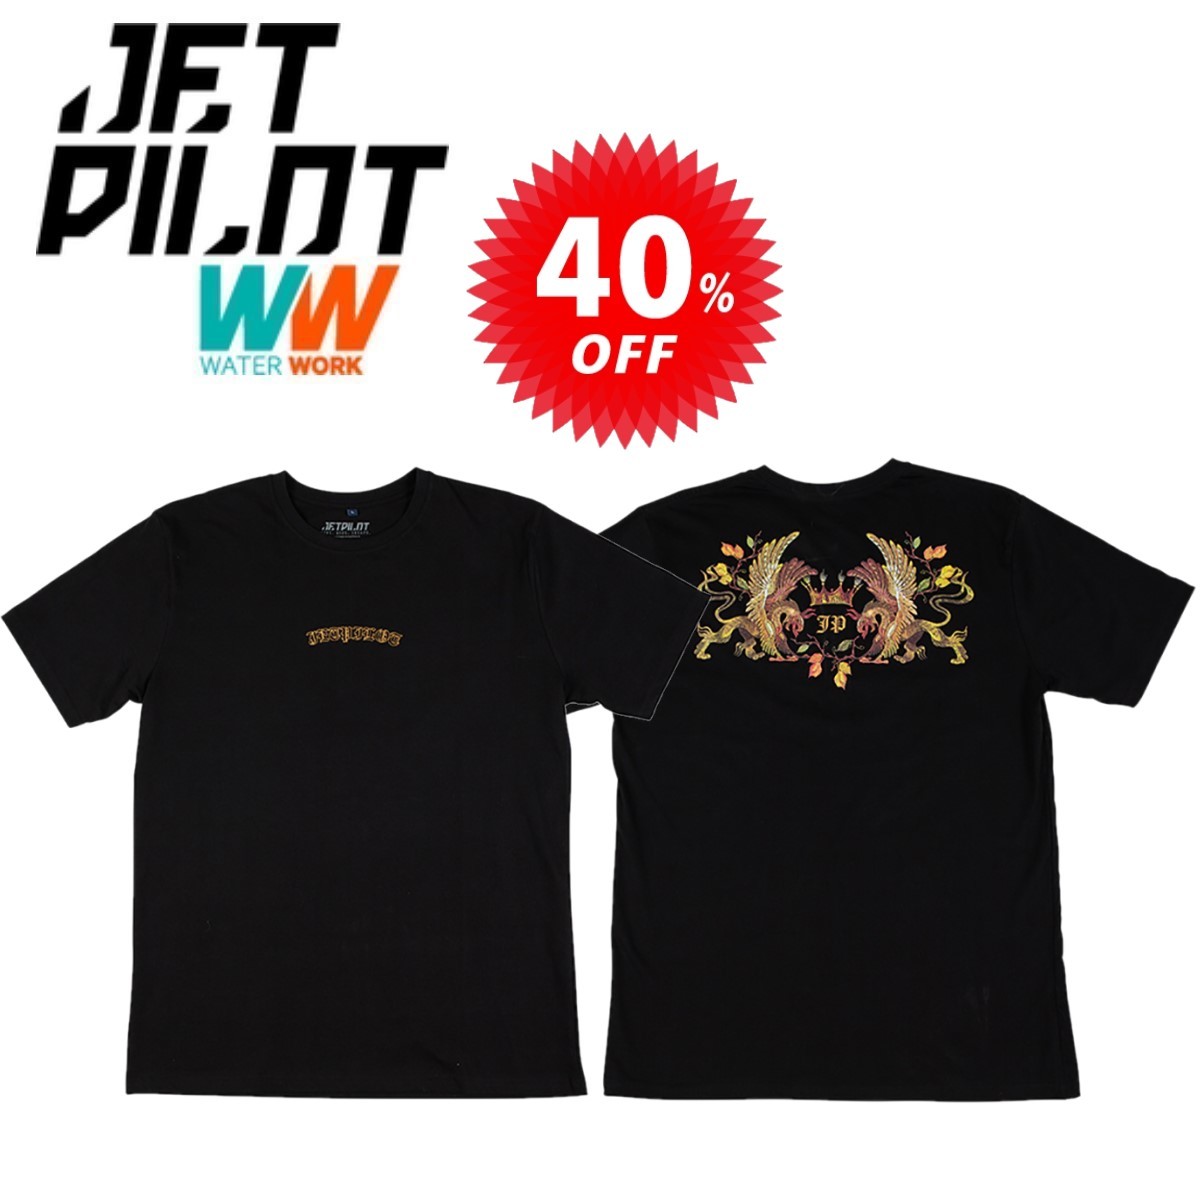 ジェットパイロット JETPILOT Tシャツ セール 40%オフ 送料無料 グリフィン Tシャツ S20661 ブラック Sの画像1